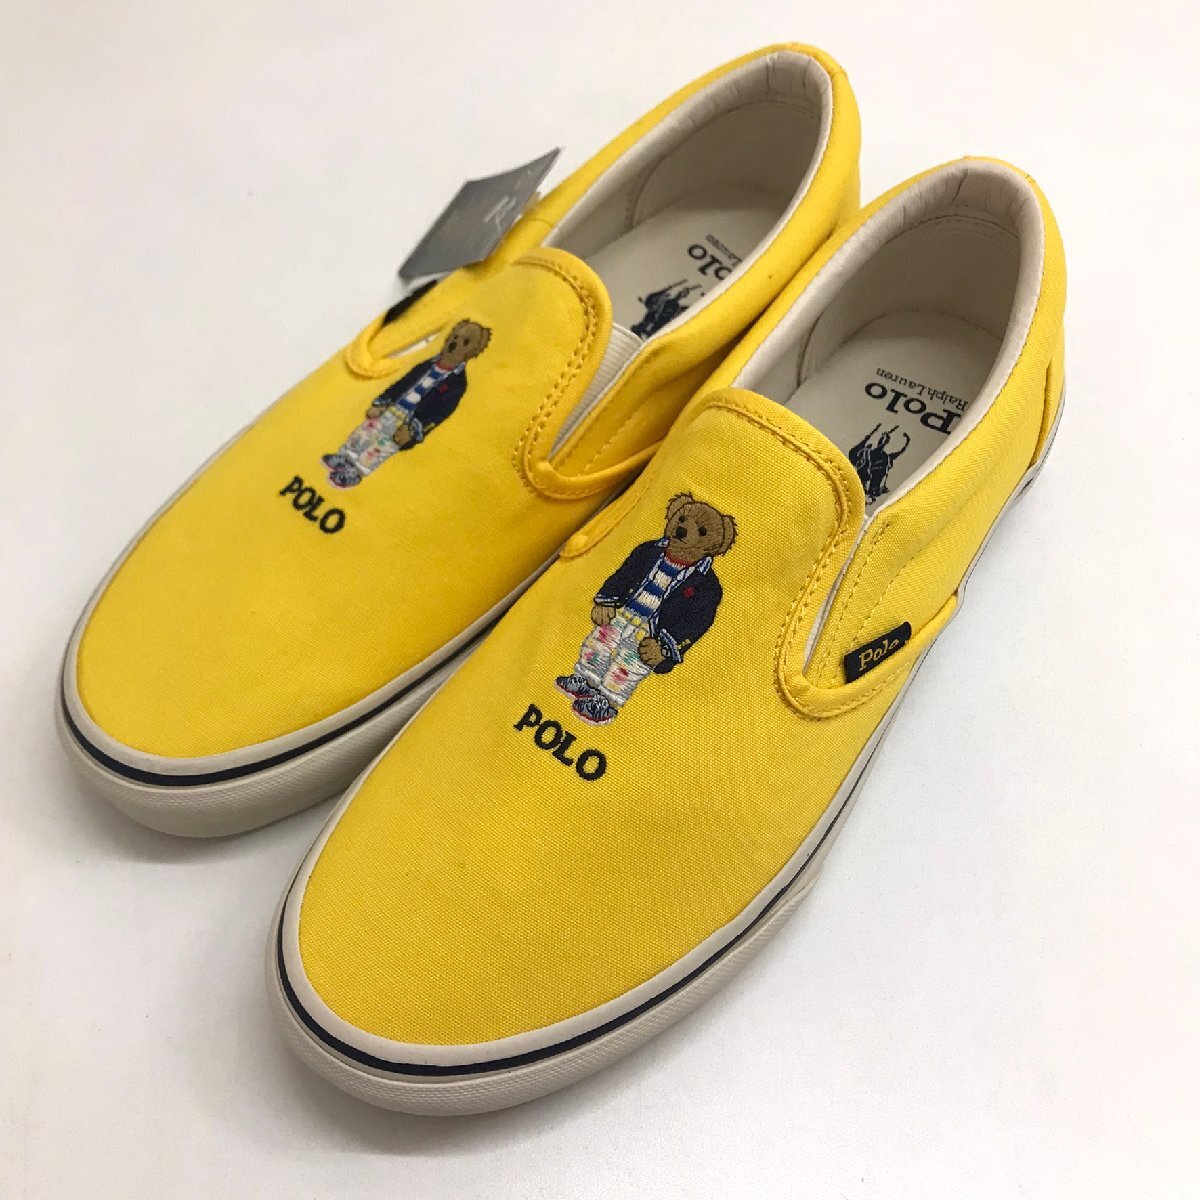 未使用品 POLO RALPH LAUREN ポロラルフローレン 靴 スリッポン 黄色 白 ベアー サイズ42 27.5cm 質屋出品の画像1